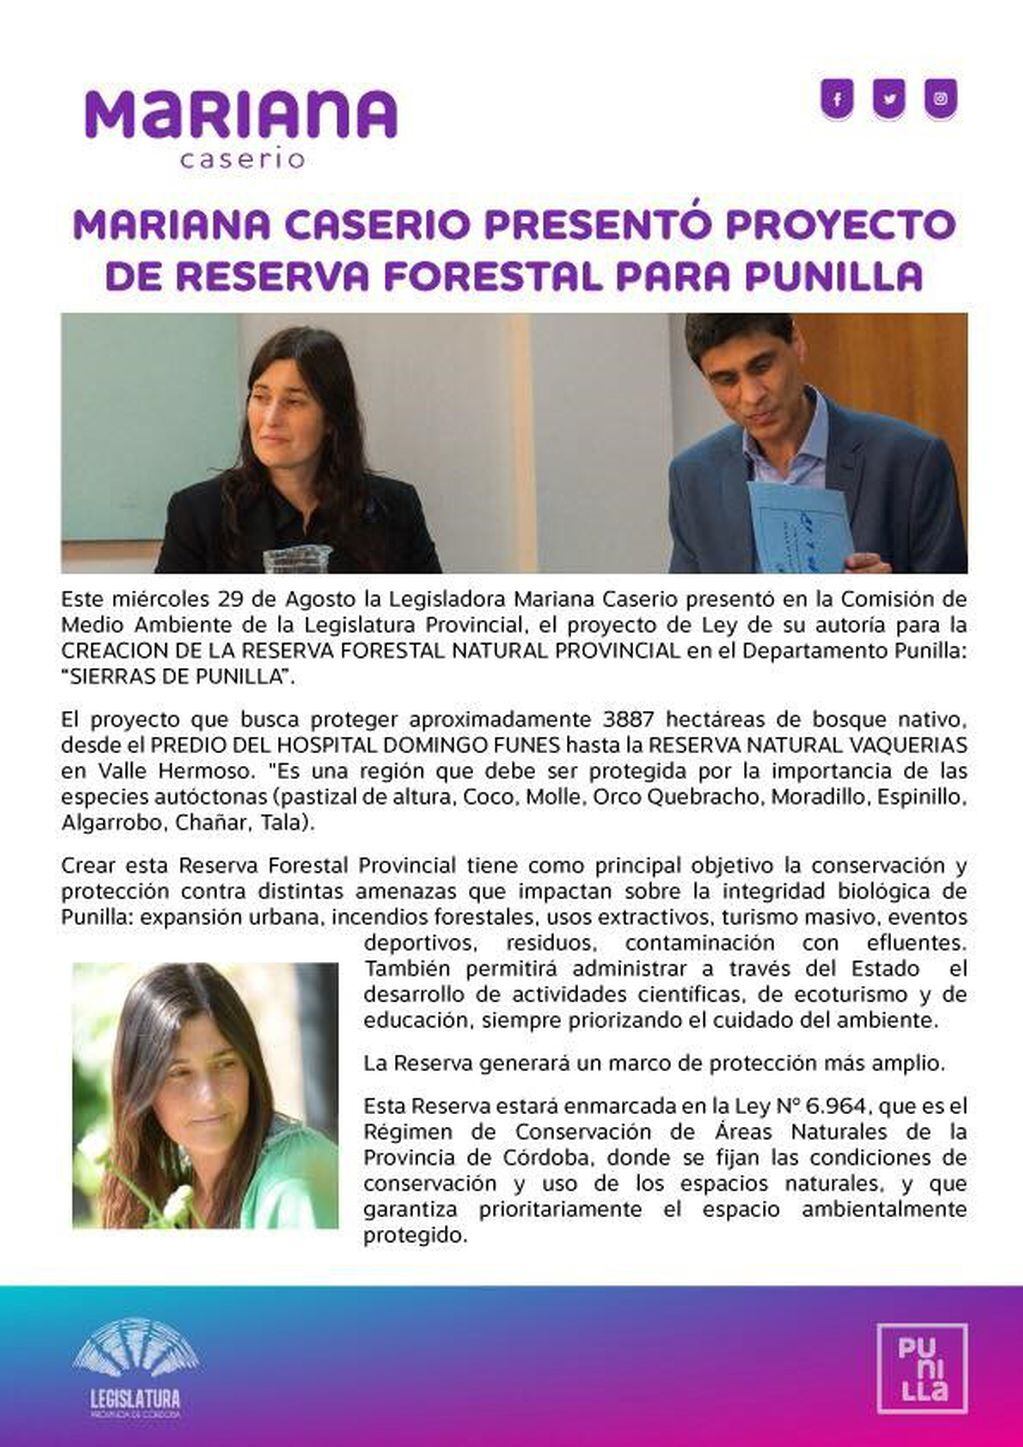 Proyecto de Reserva Forestal para Punilla de Mariana Caserio